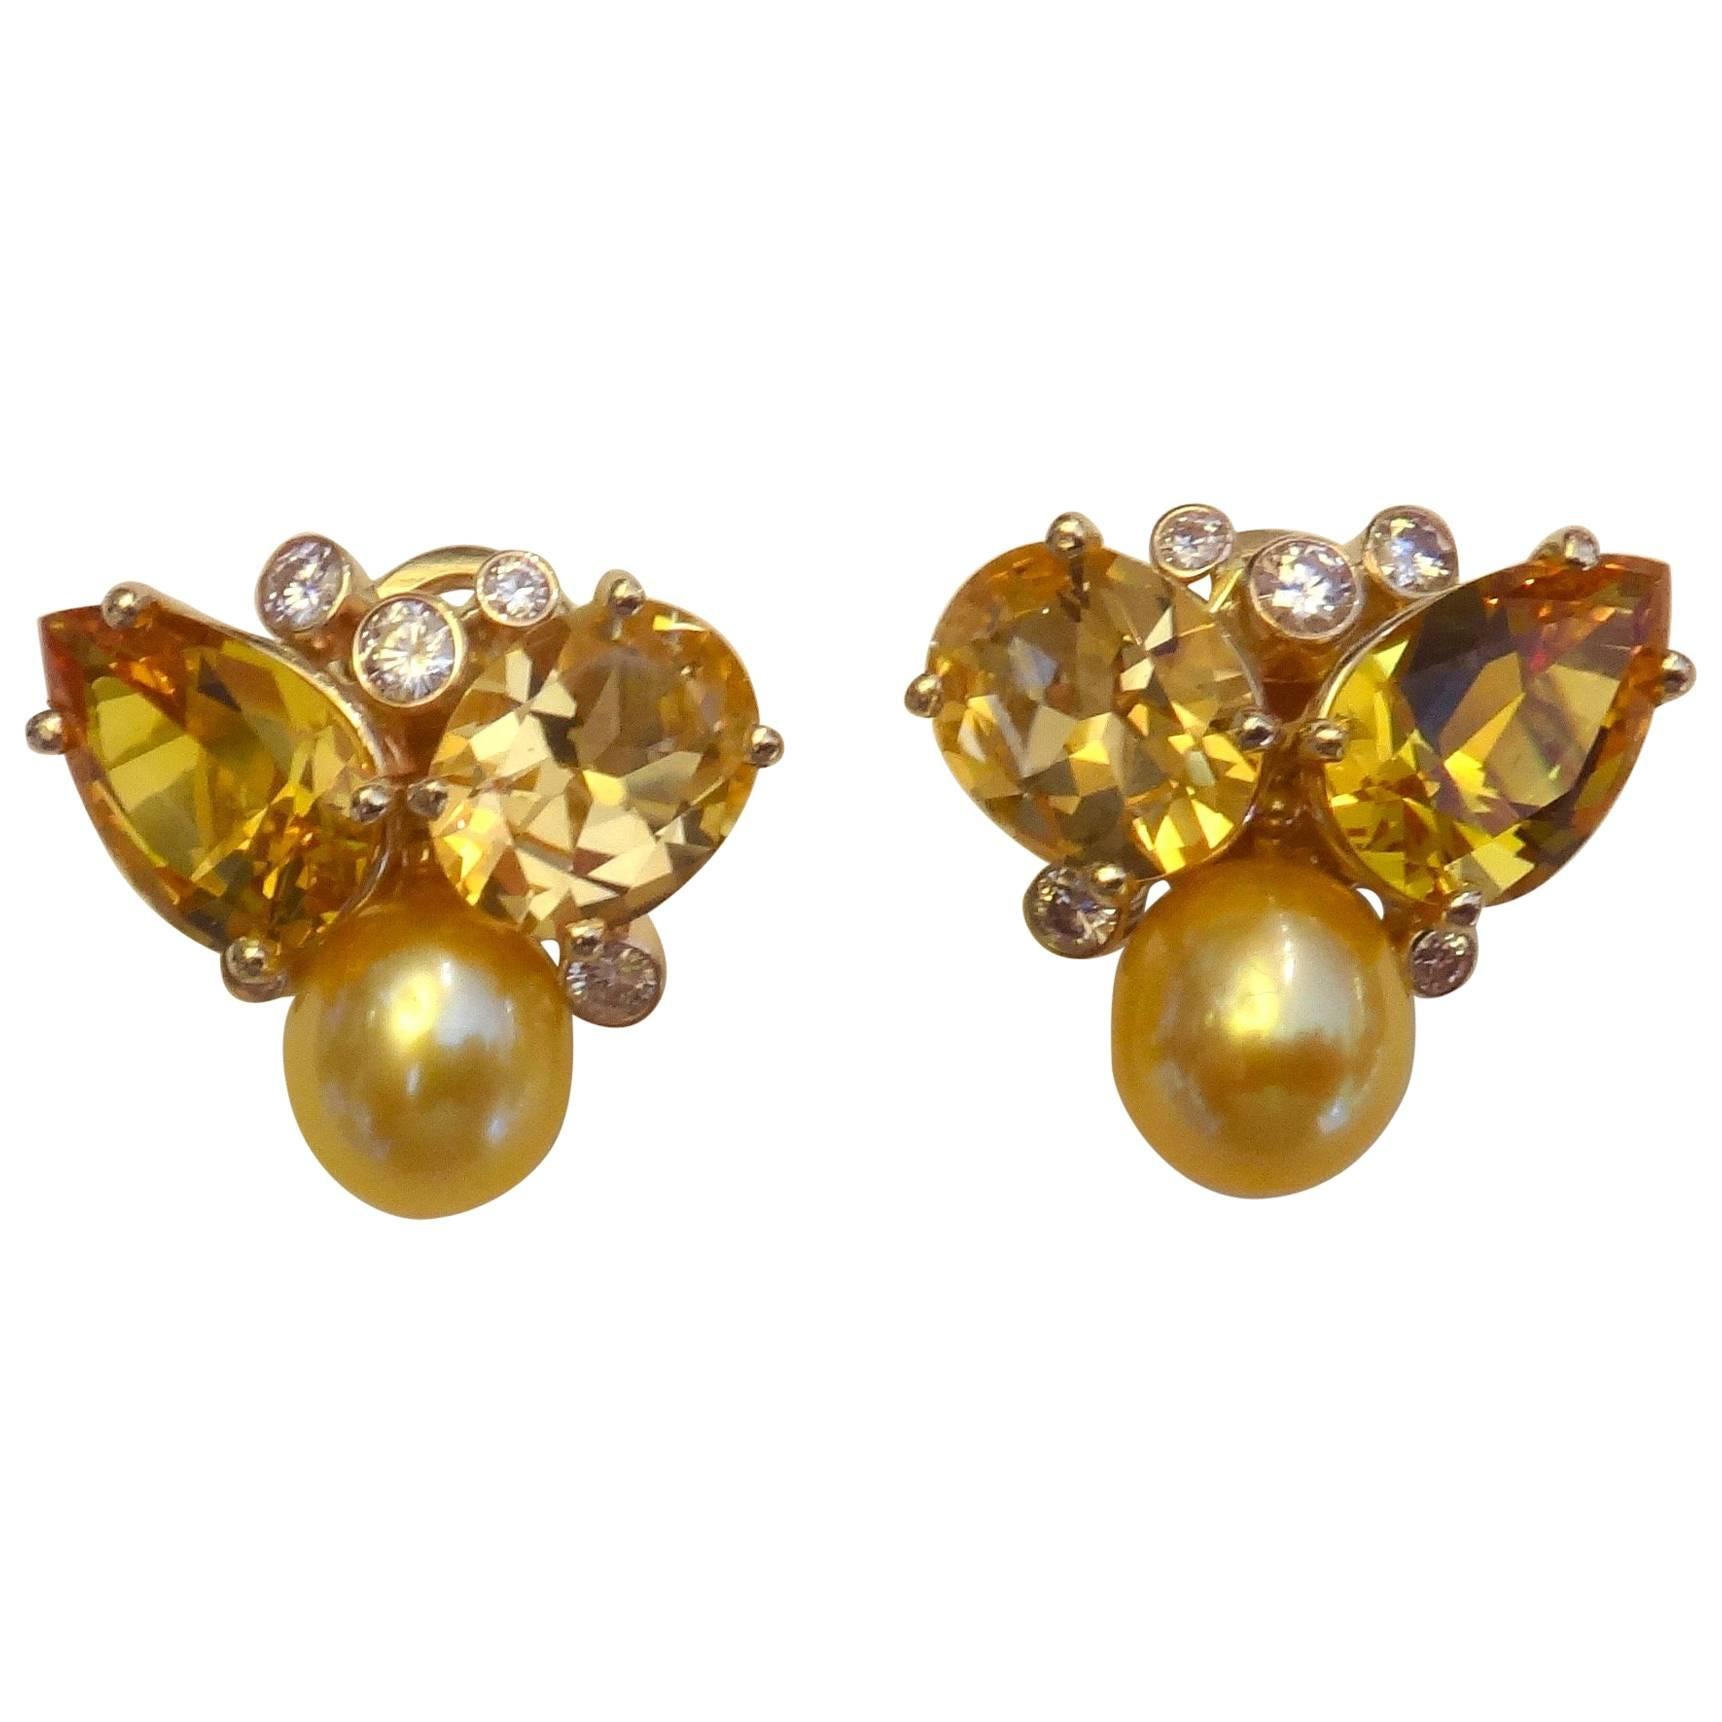 Michael Kneebone Topaz Citrine Golden Pearl Diamond "Confetti" Earrings